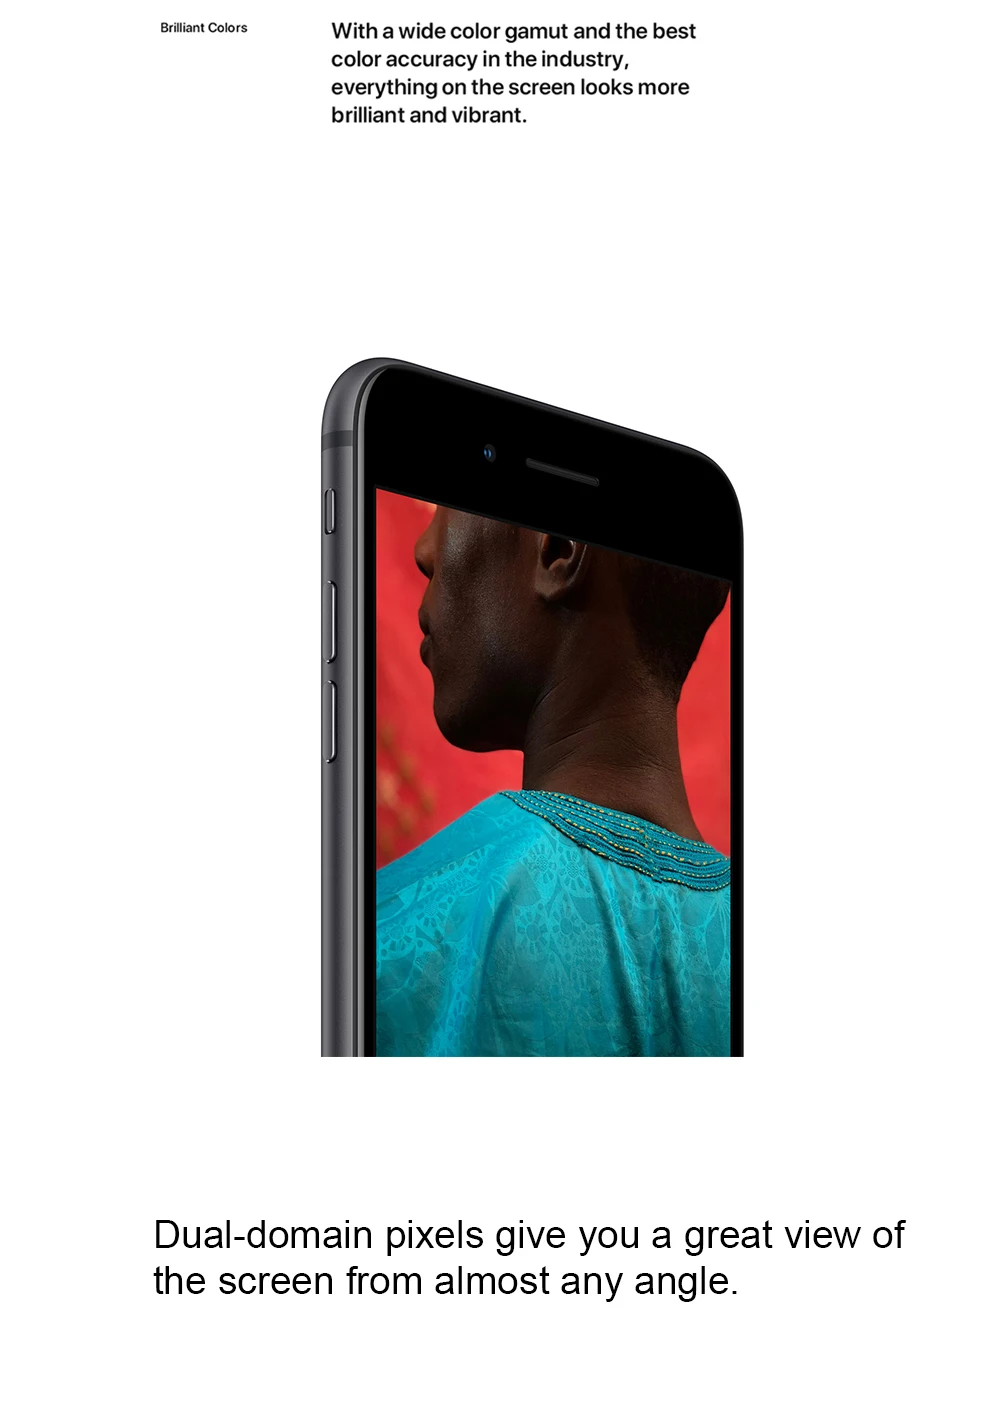 Apple iPhone 8 4," 4G LTE 2 Гб ОЗУ 64 Гб/256 Гб ПЗУ Беспроводная зарядка Hexa Core 12MP Touch ID IOS 11 разблокированный мобильный телефон